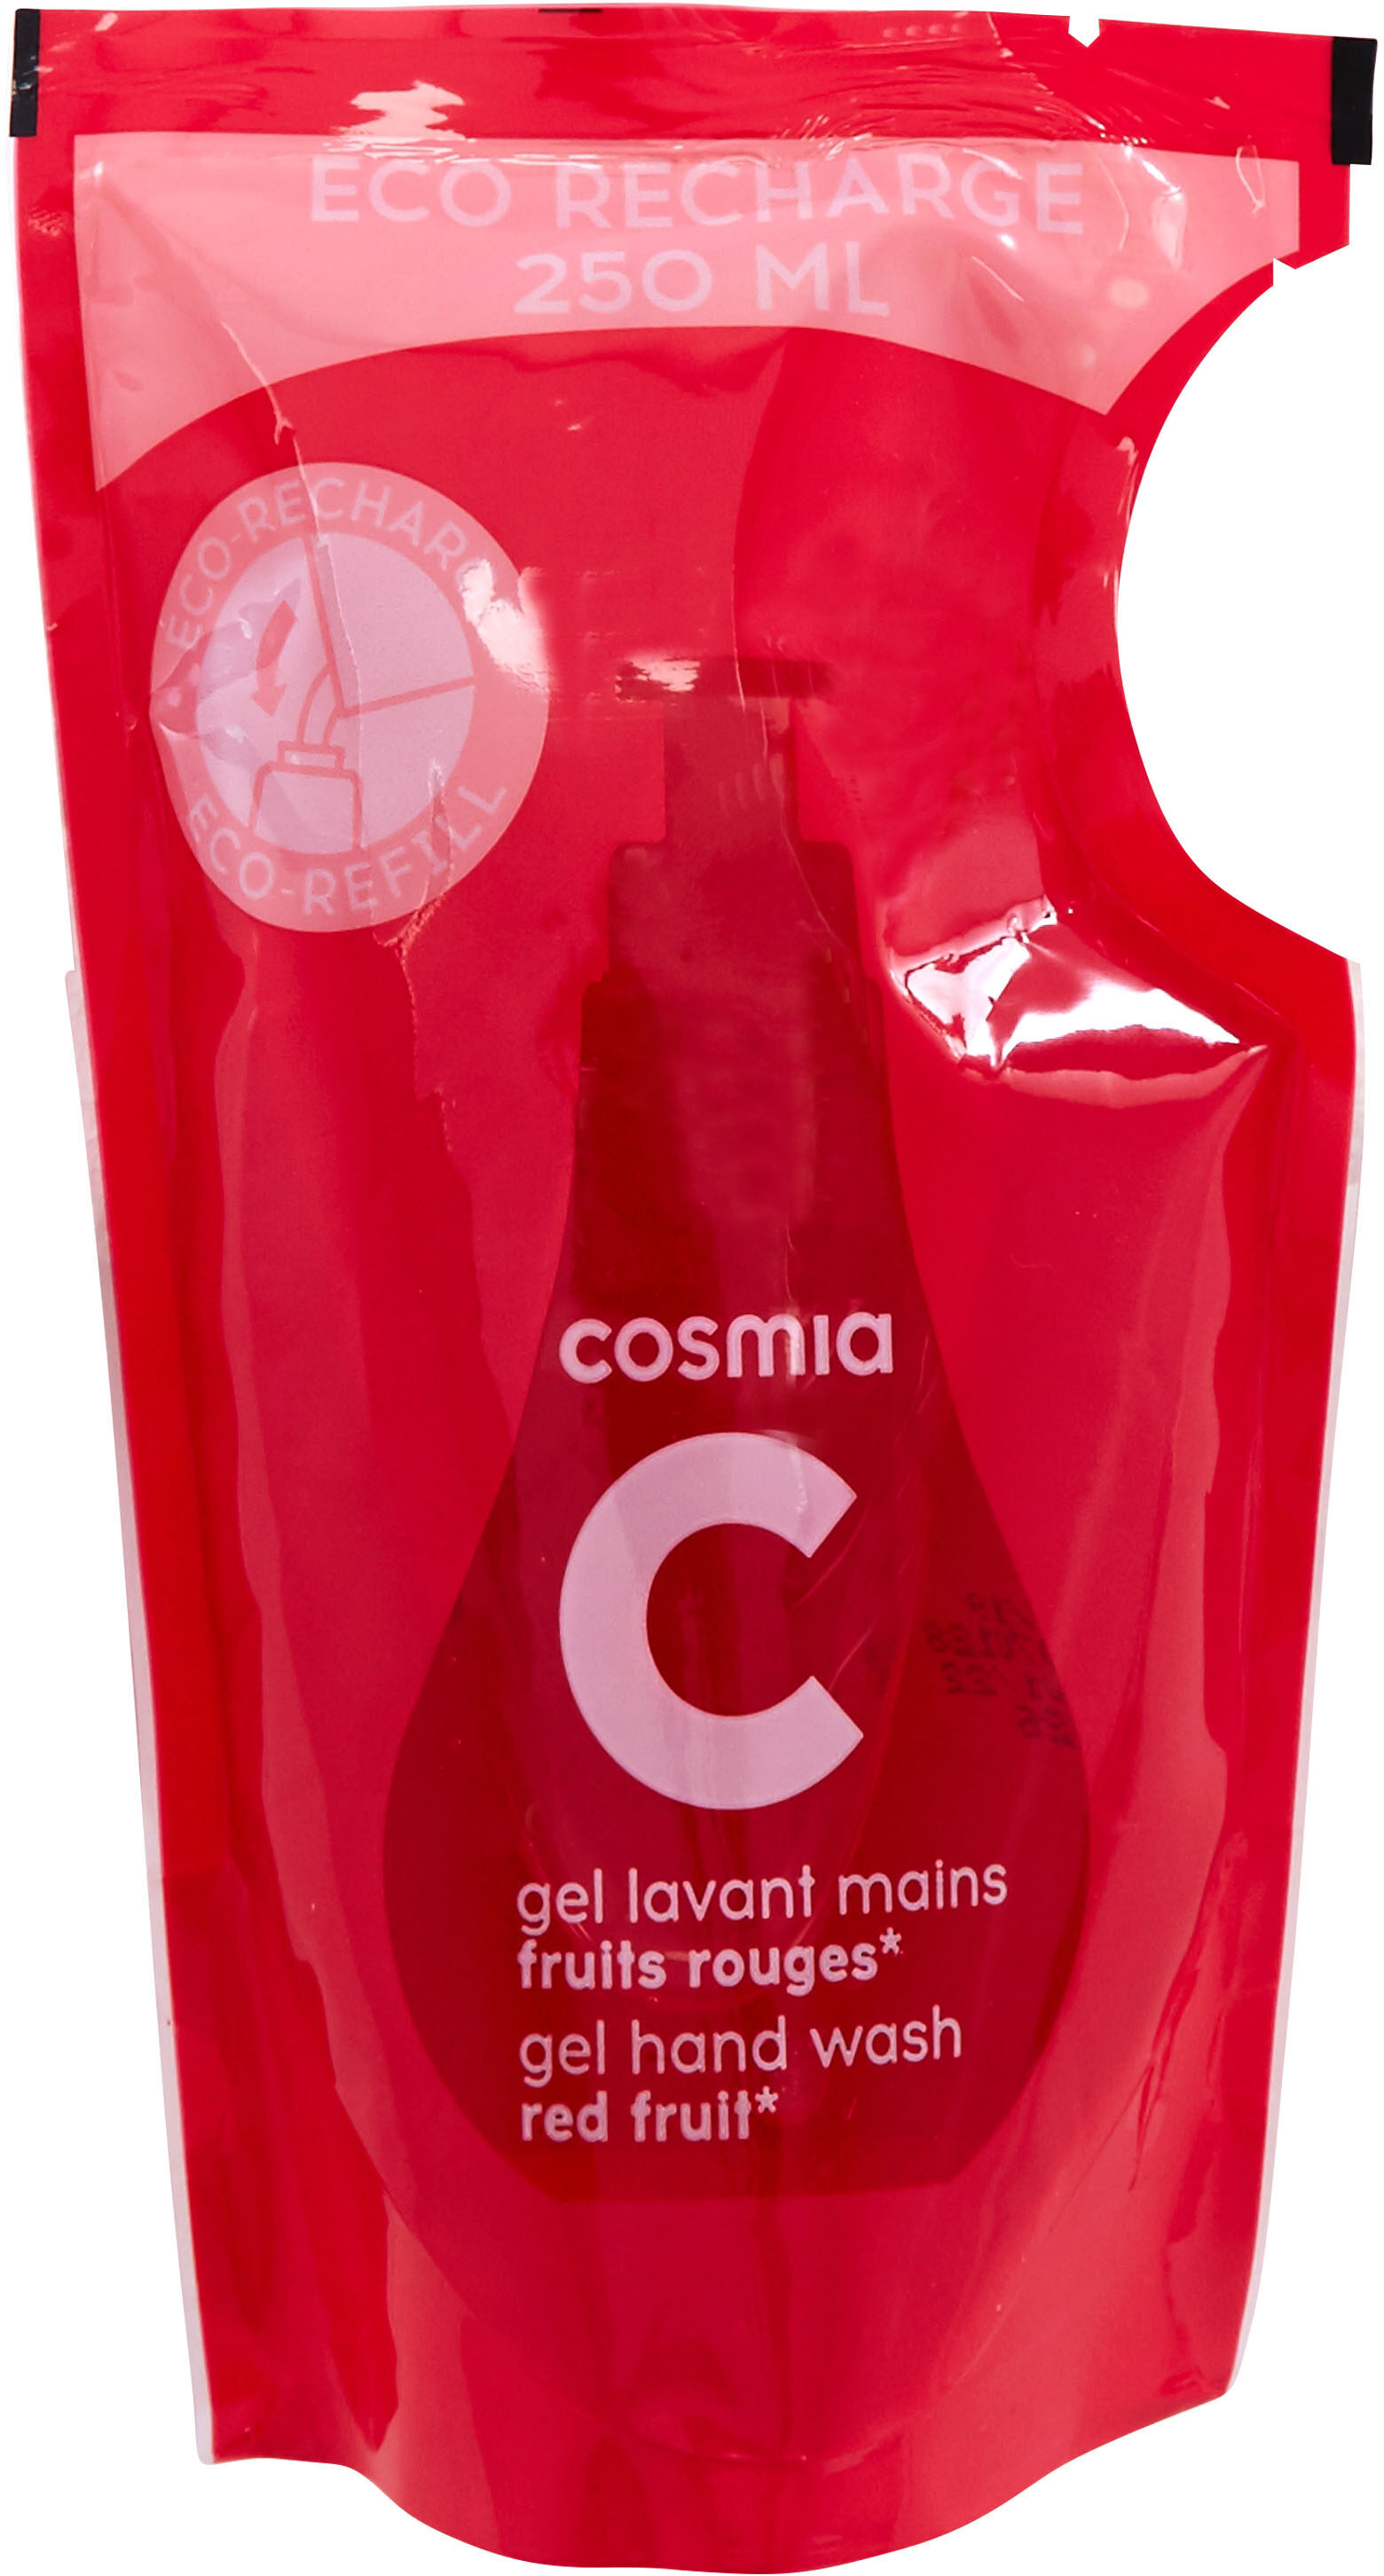 Cosmia - éco-recharge gel lavant mains - parfum fruits rouges* - tous types de peaux - 250ml - Produkto - fr